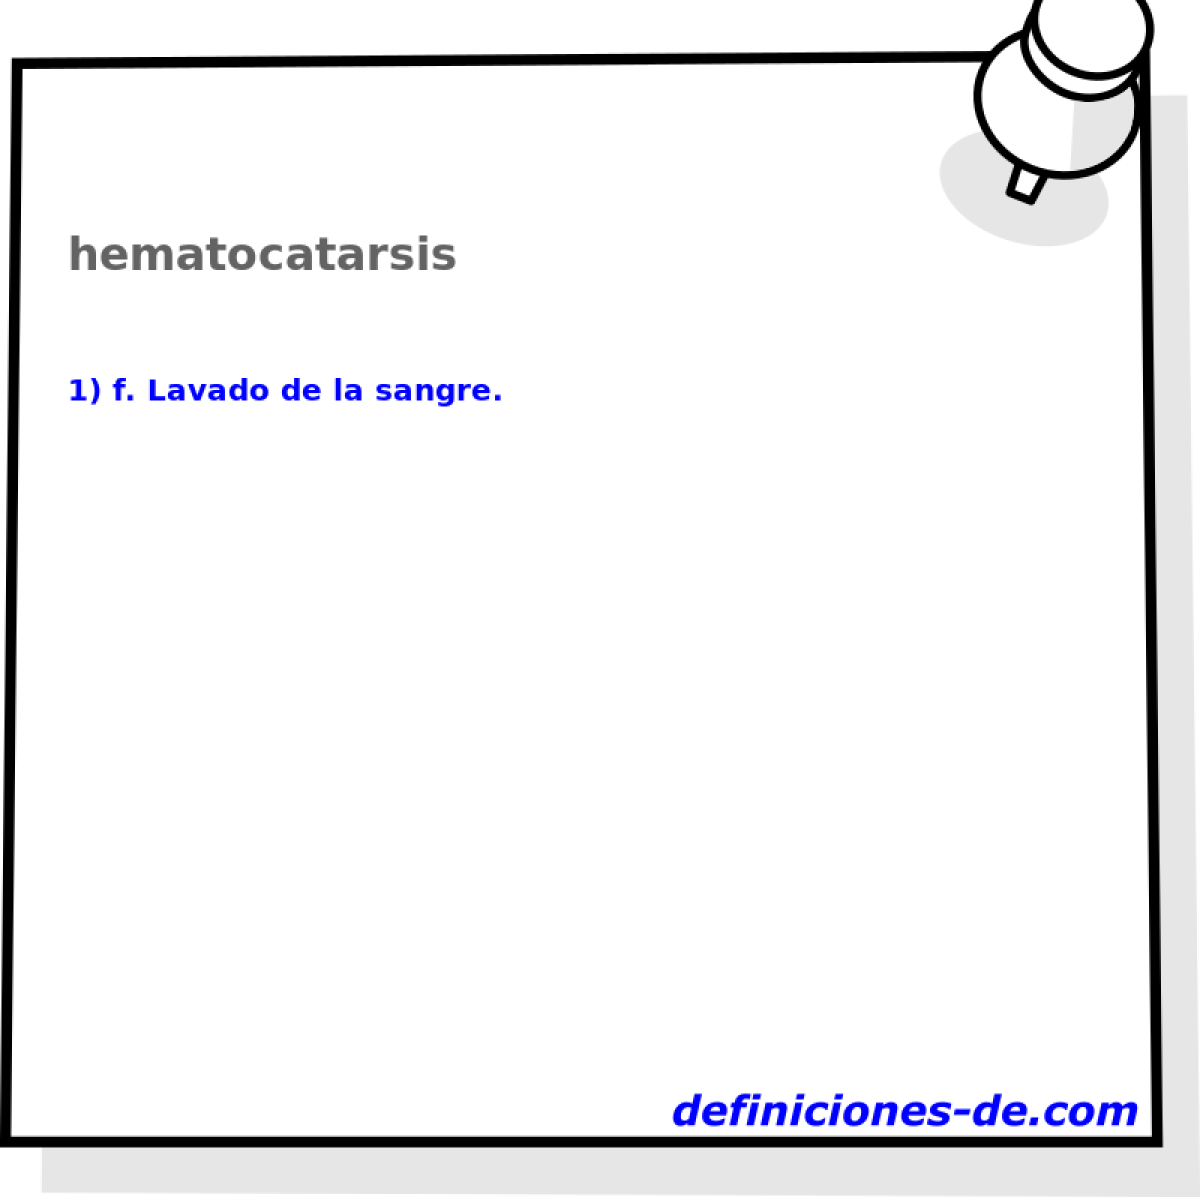 hematocatarsis 